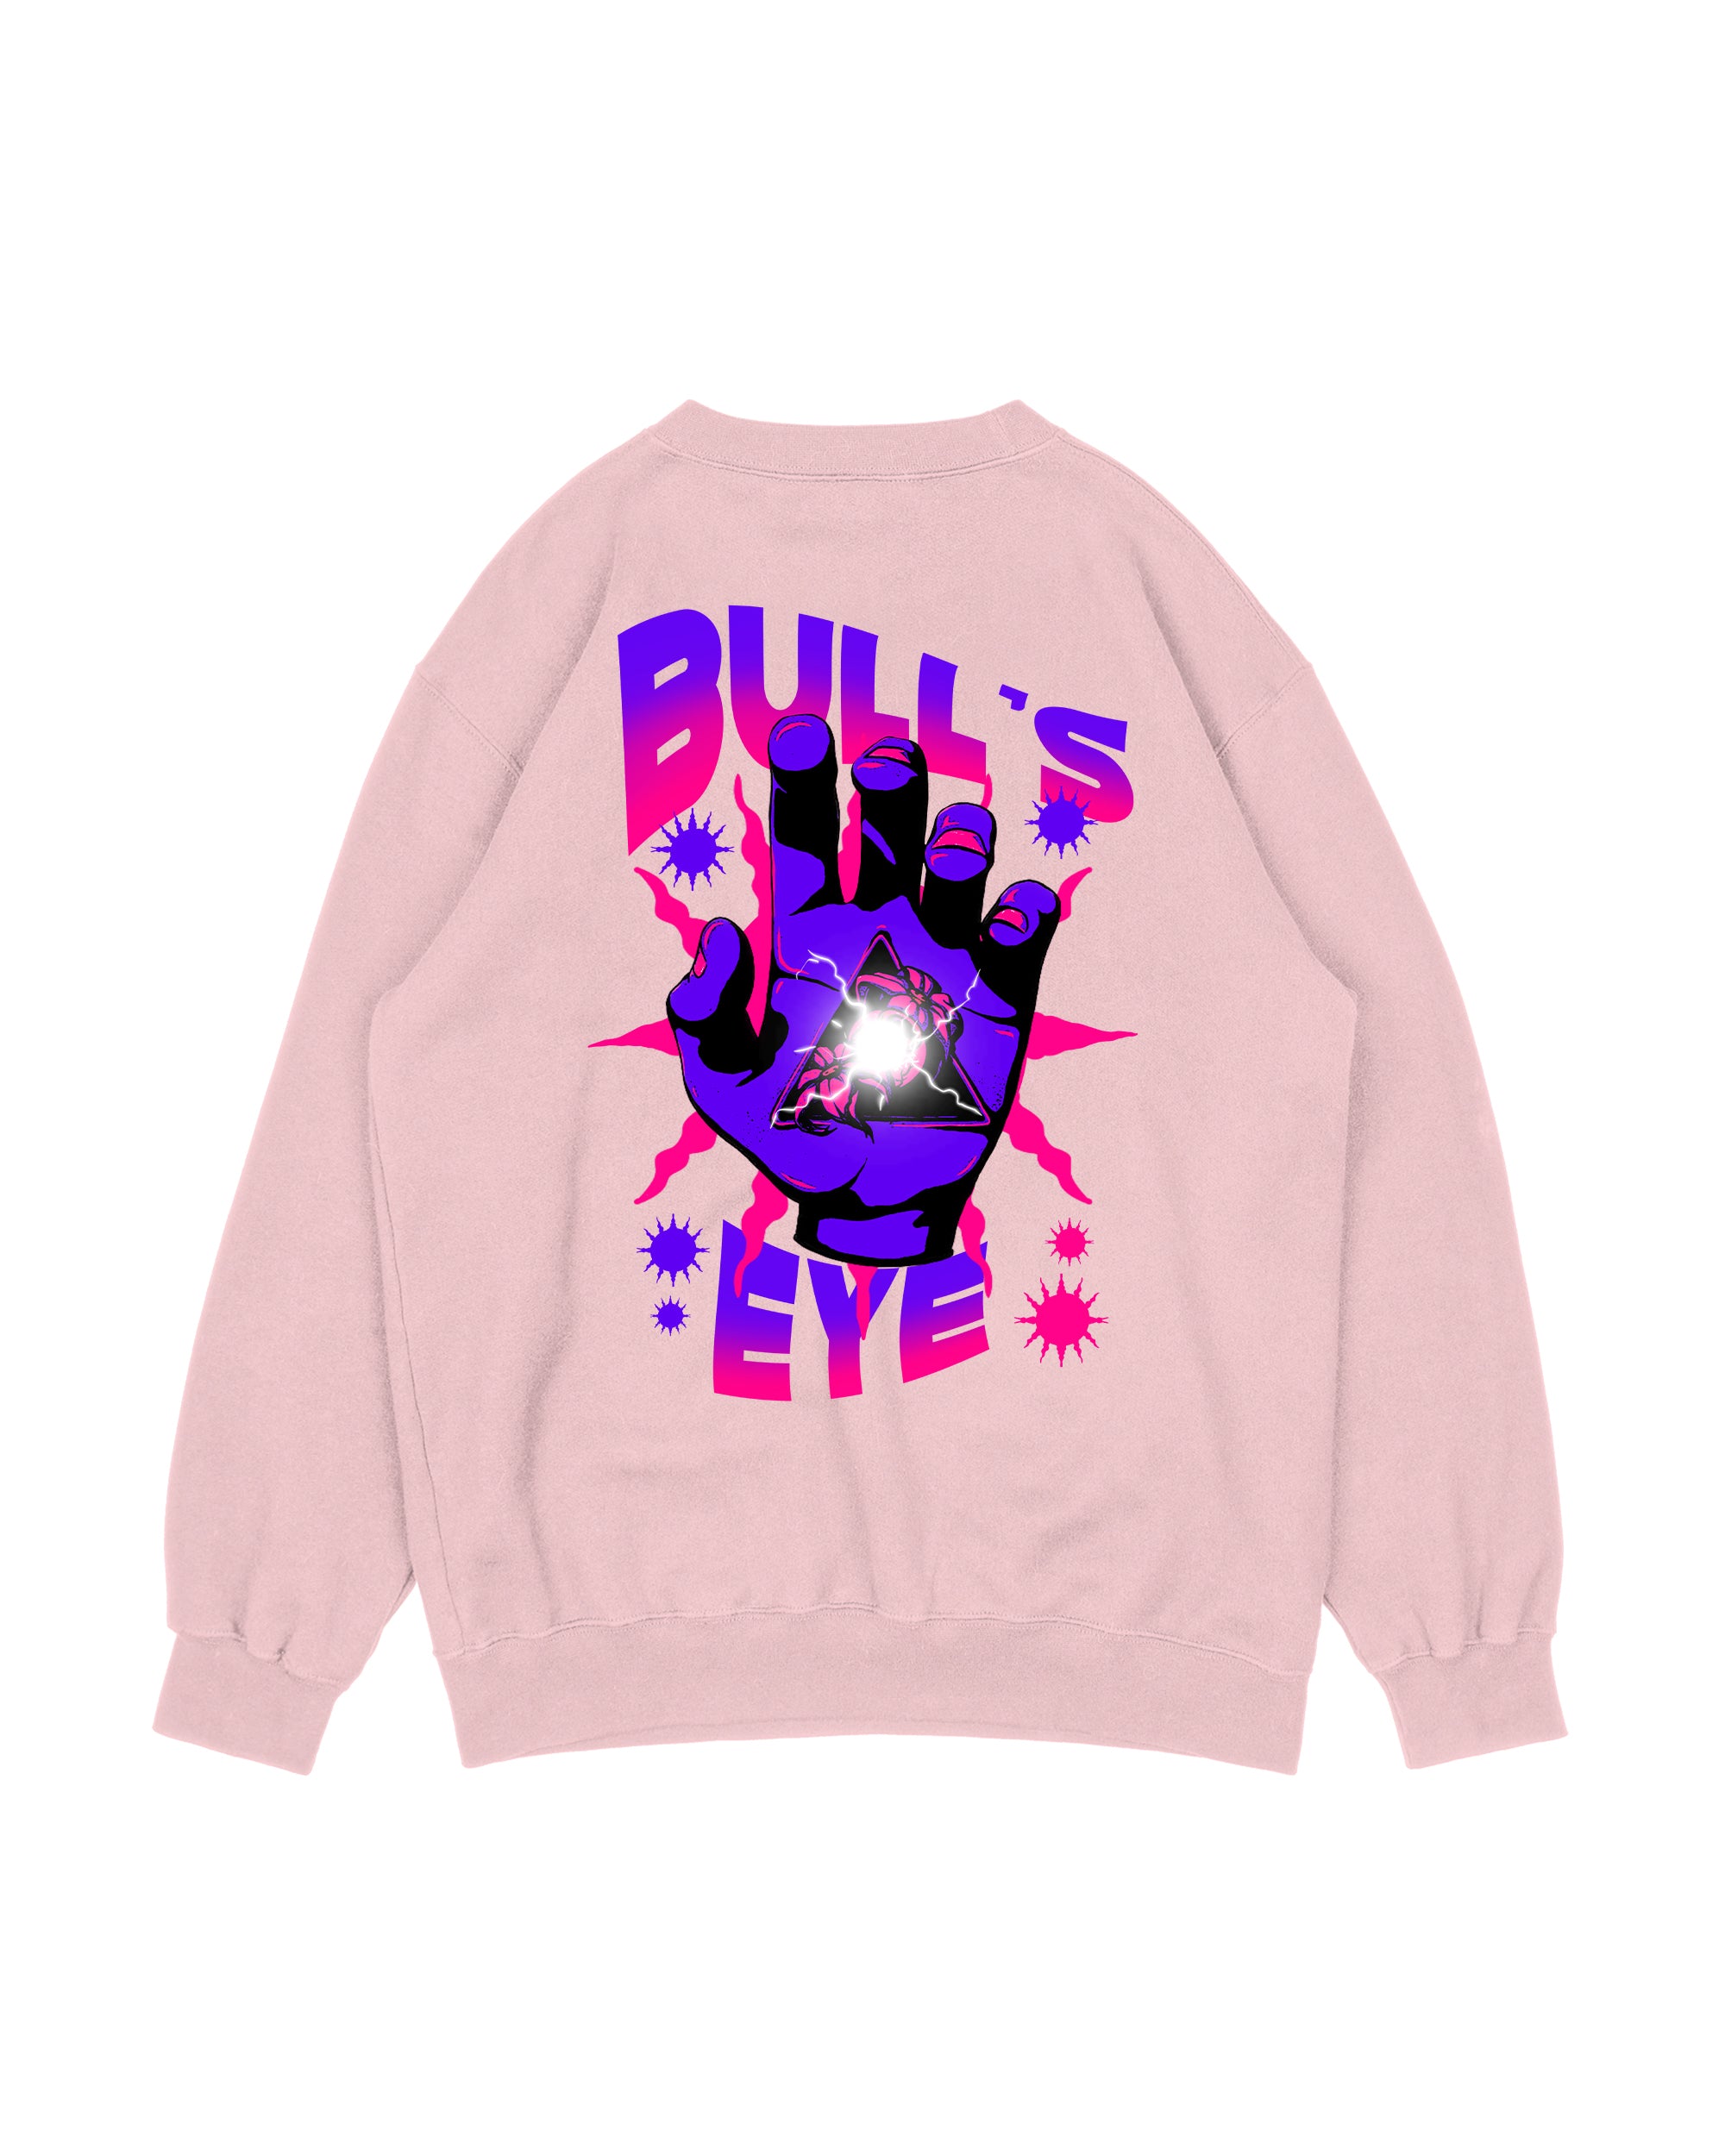 Bull's Eye Sweatshirt